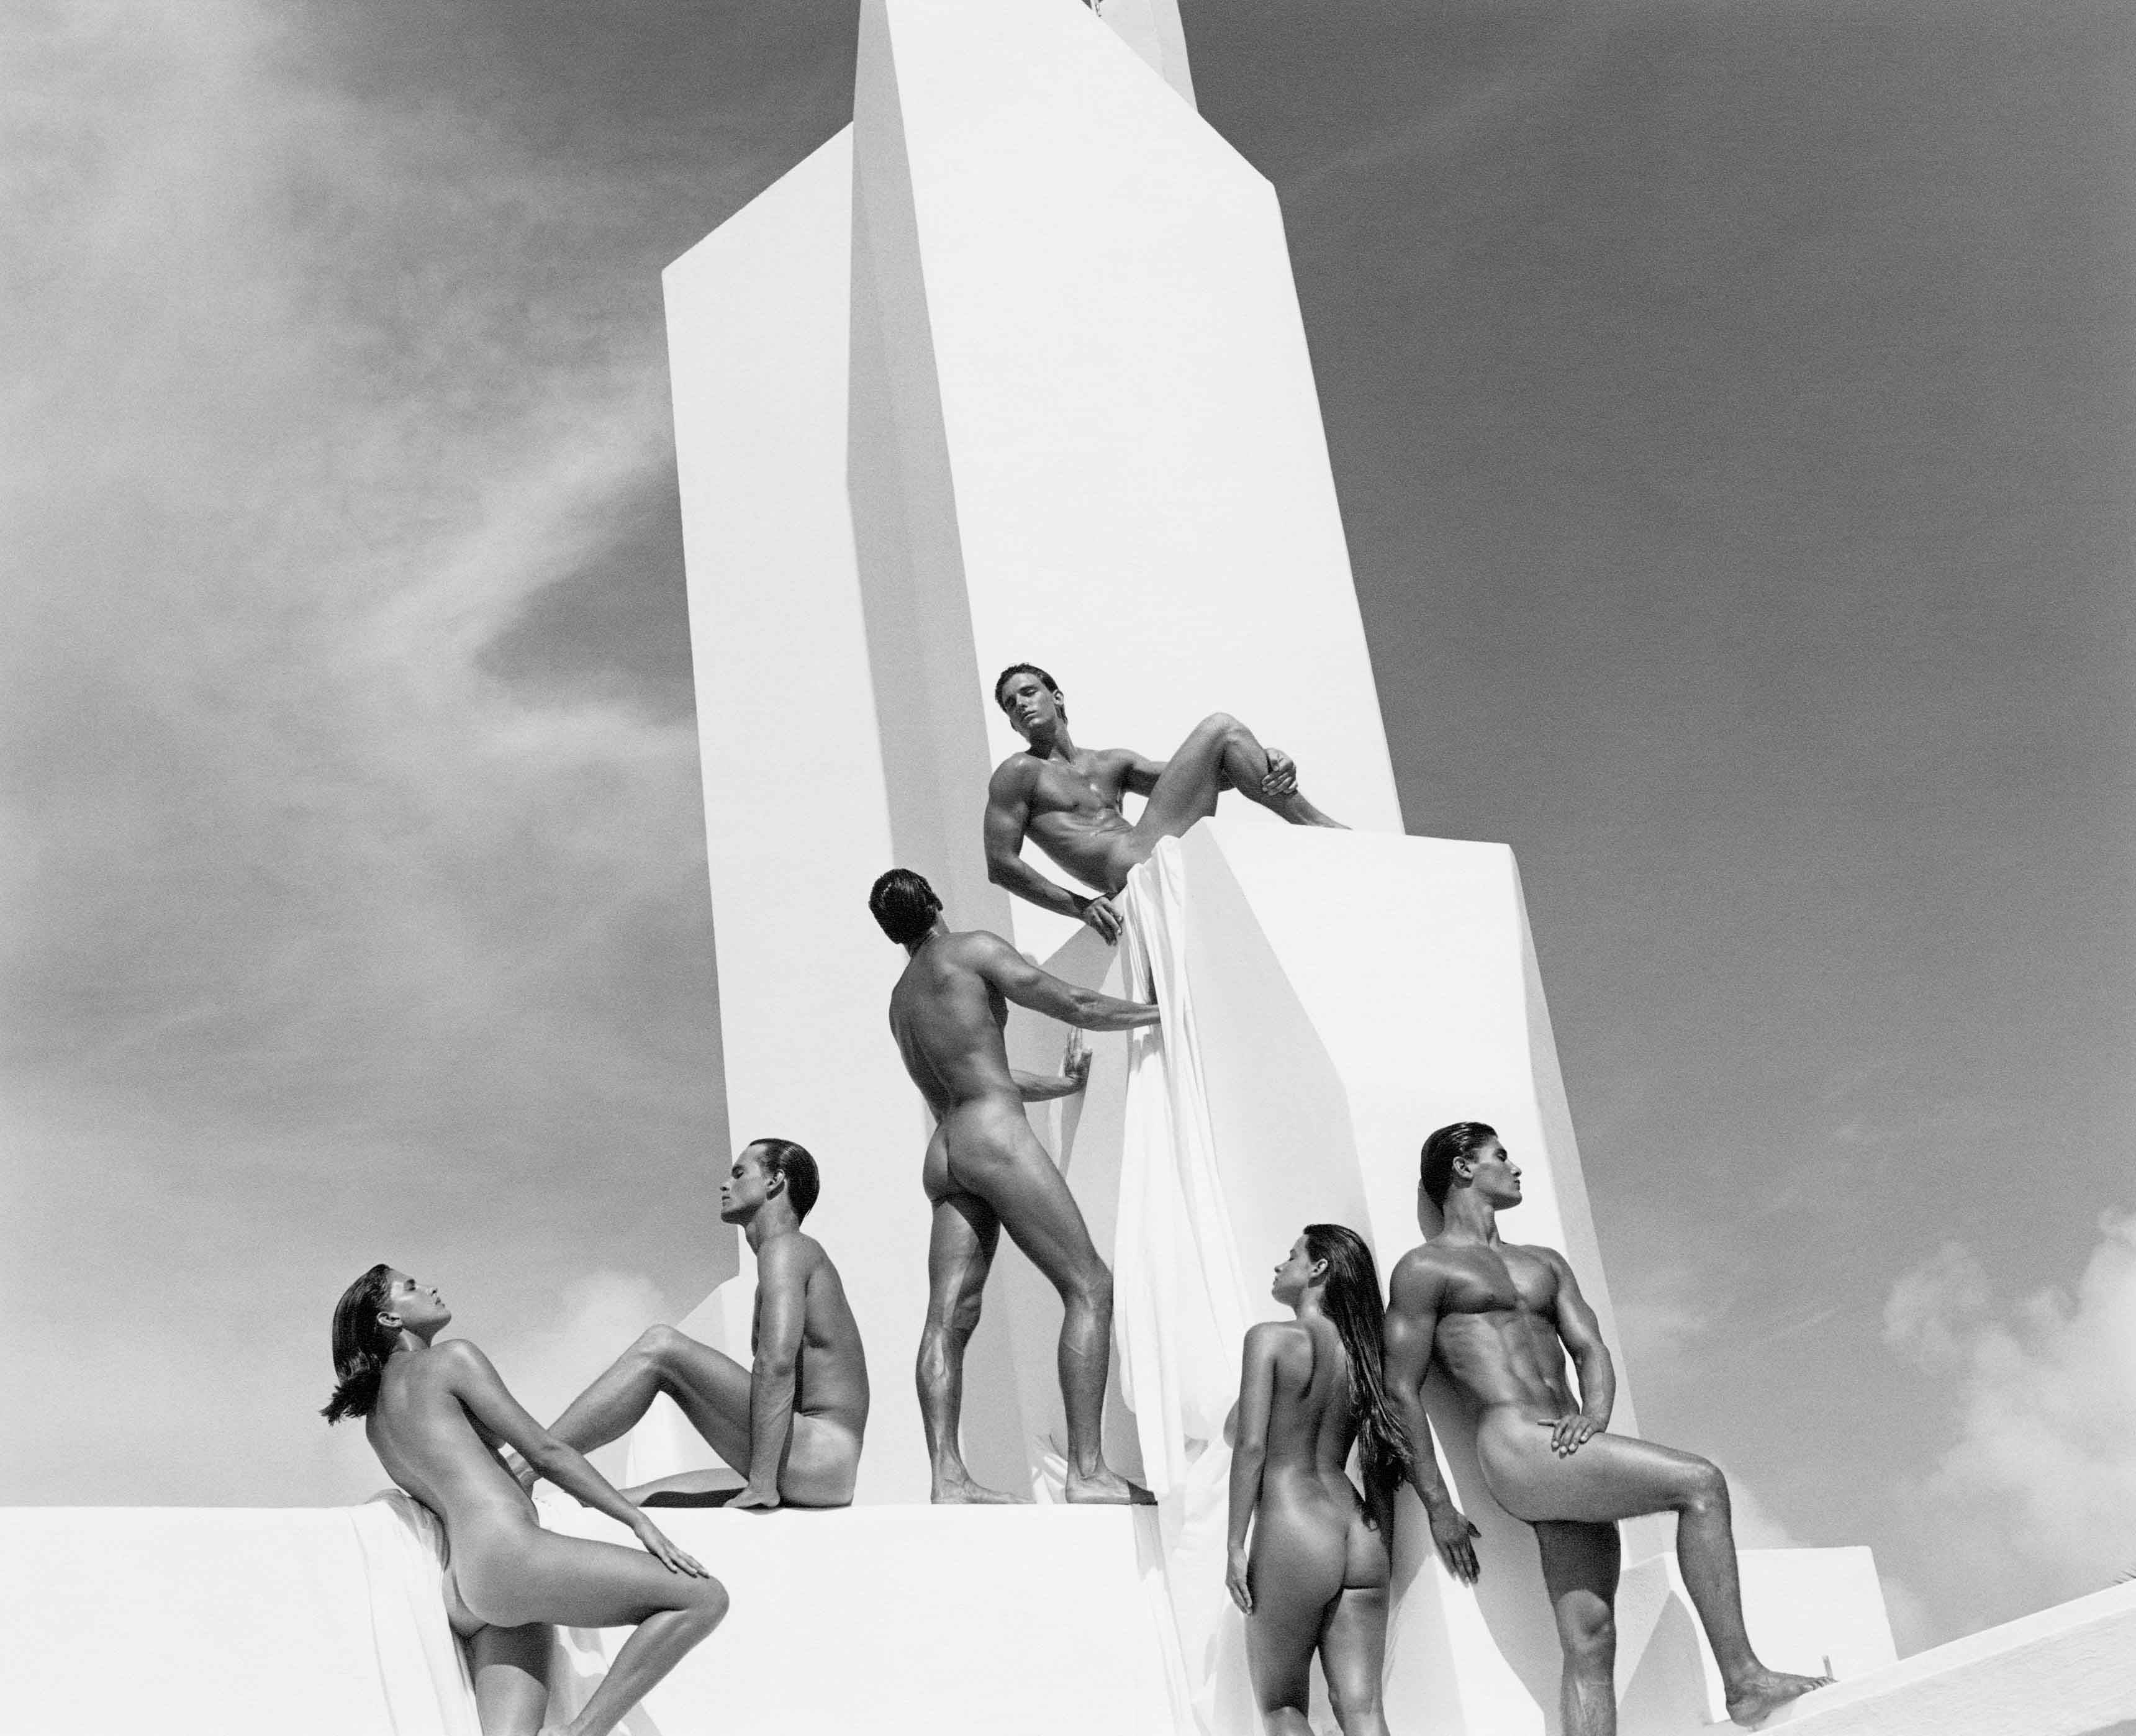 La campagne publicitaire pour le parfum Obsession, avec ses mannequins aux corps athlétiques posant dans un décor aux allures constructivistes.